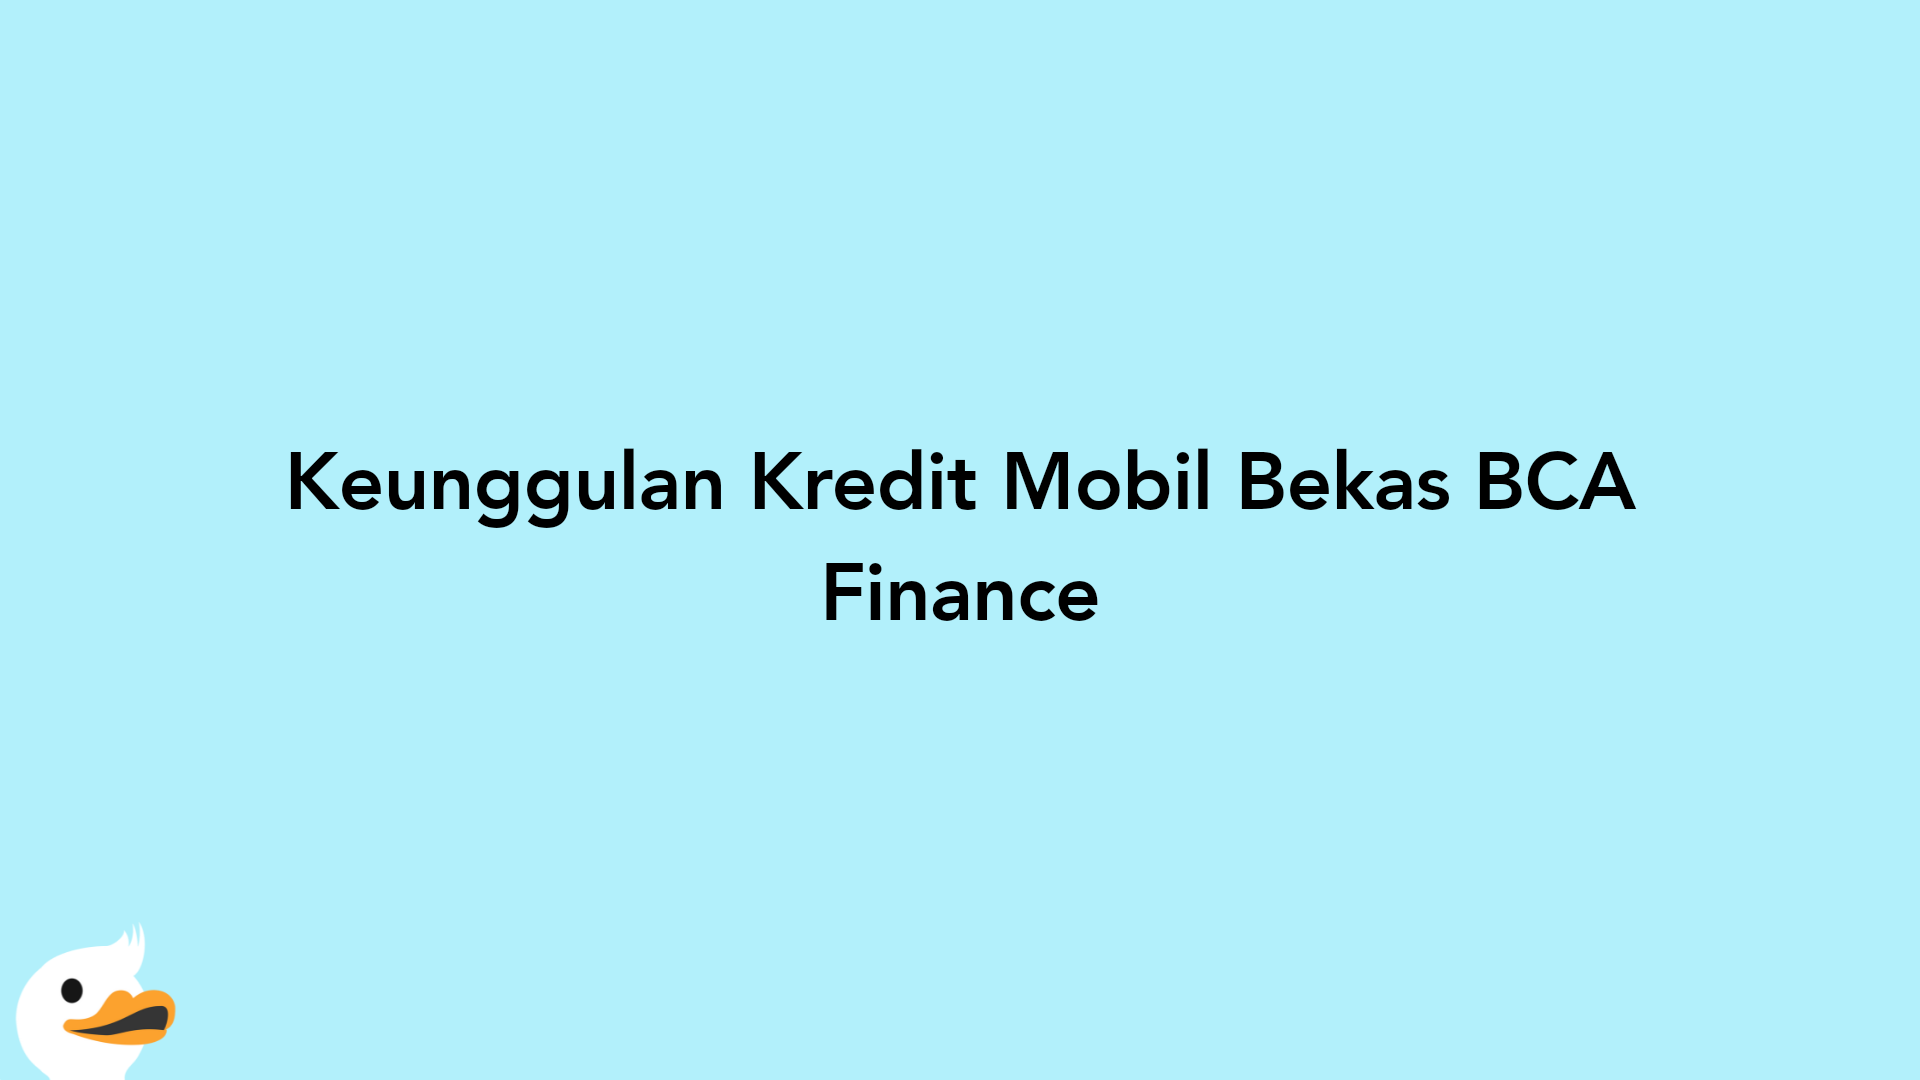 Keunggulan Kredit Mobil Bekas BCA Finance